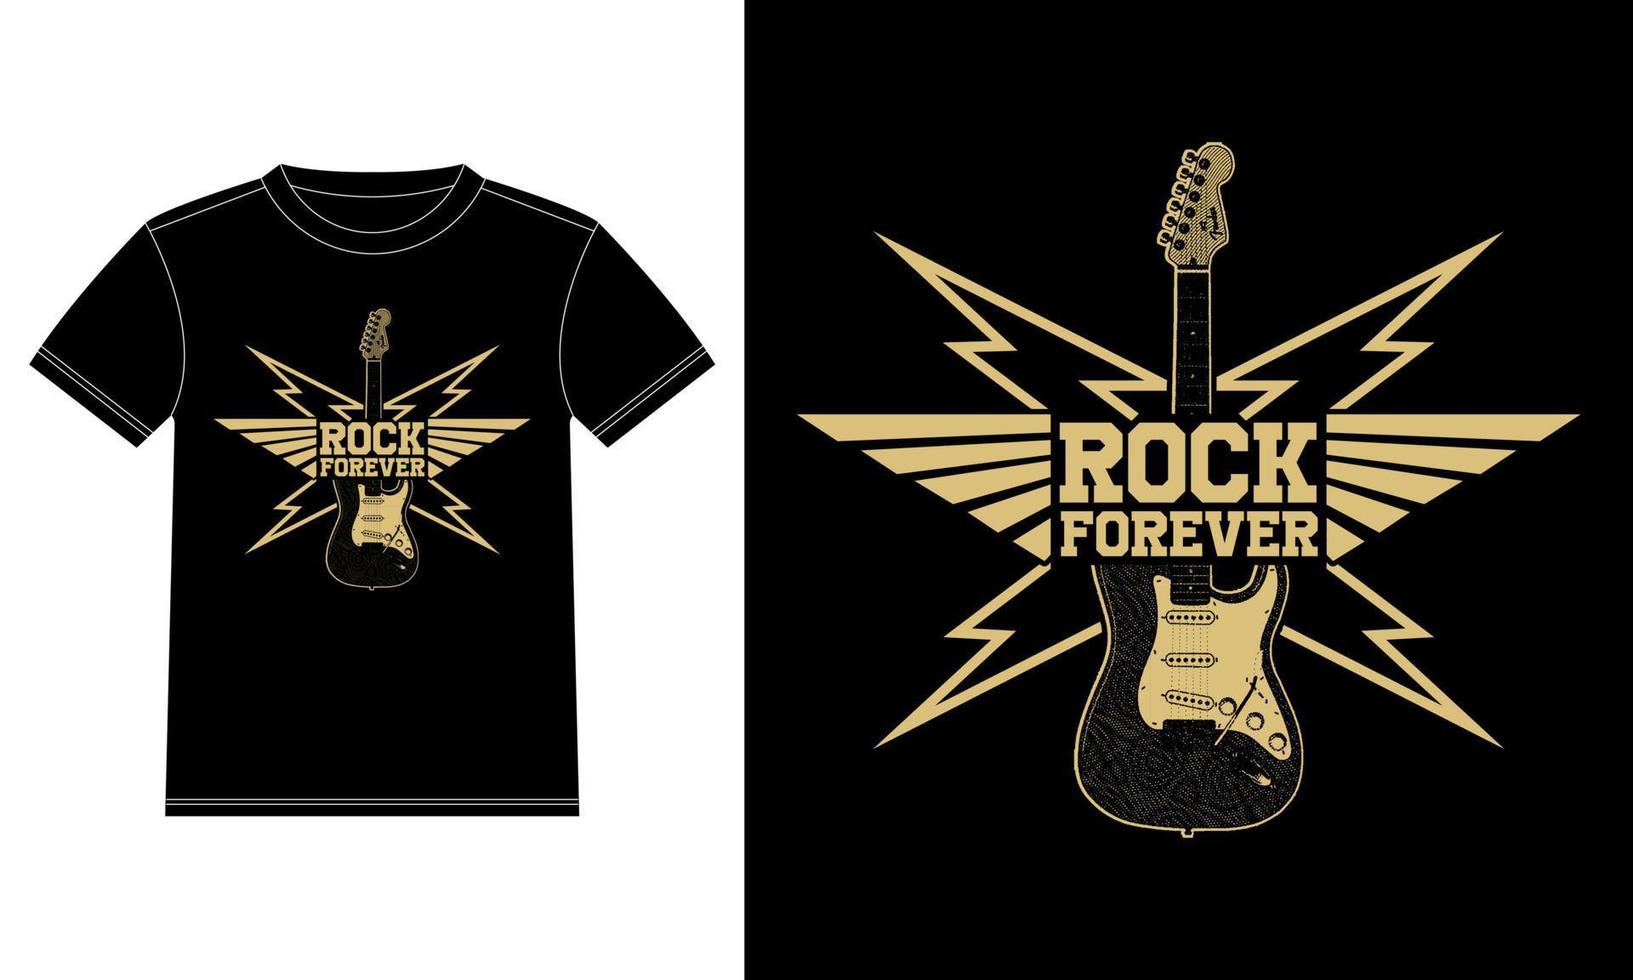 étiquette vintage avec rock forever et modèle de conception de t-shirt de guitare, autocollant de fenêtre de voiture, pod, couverture, fond noir isolé vecteur